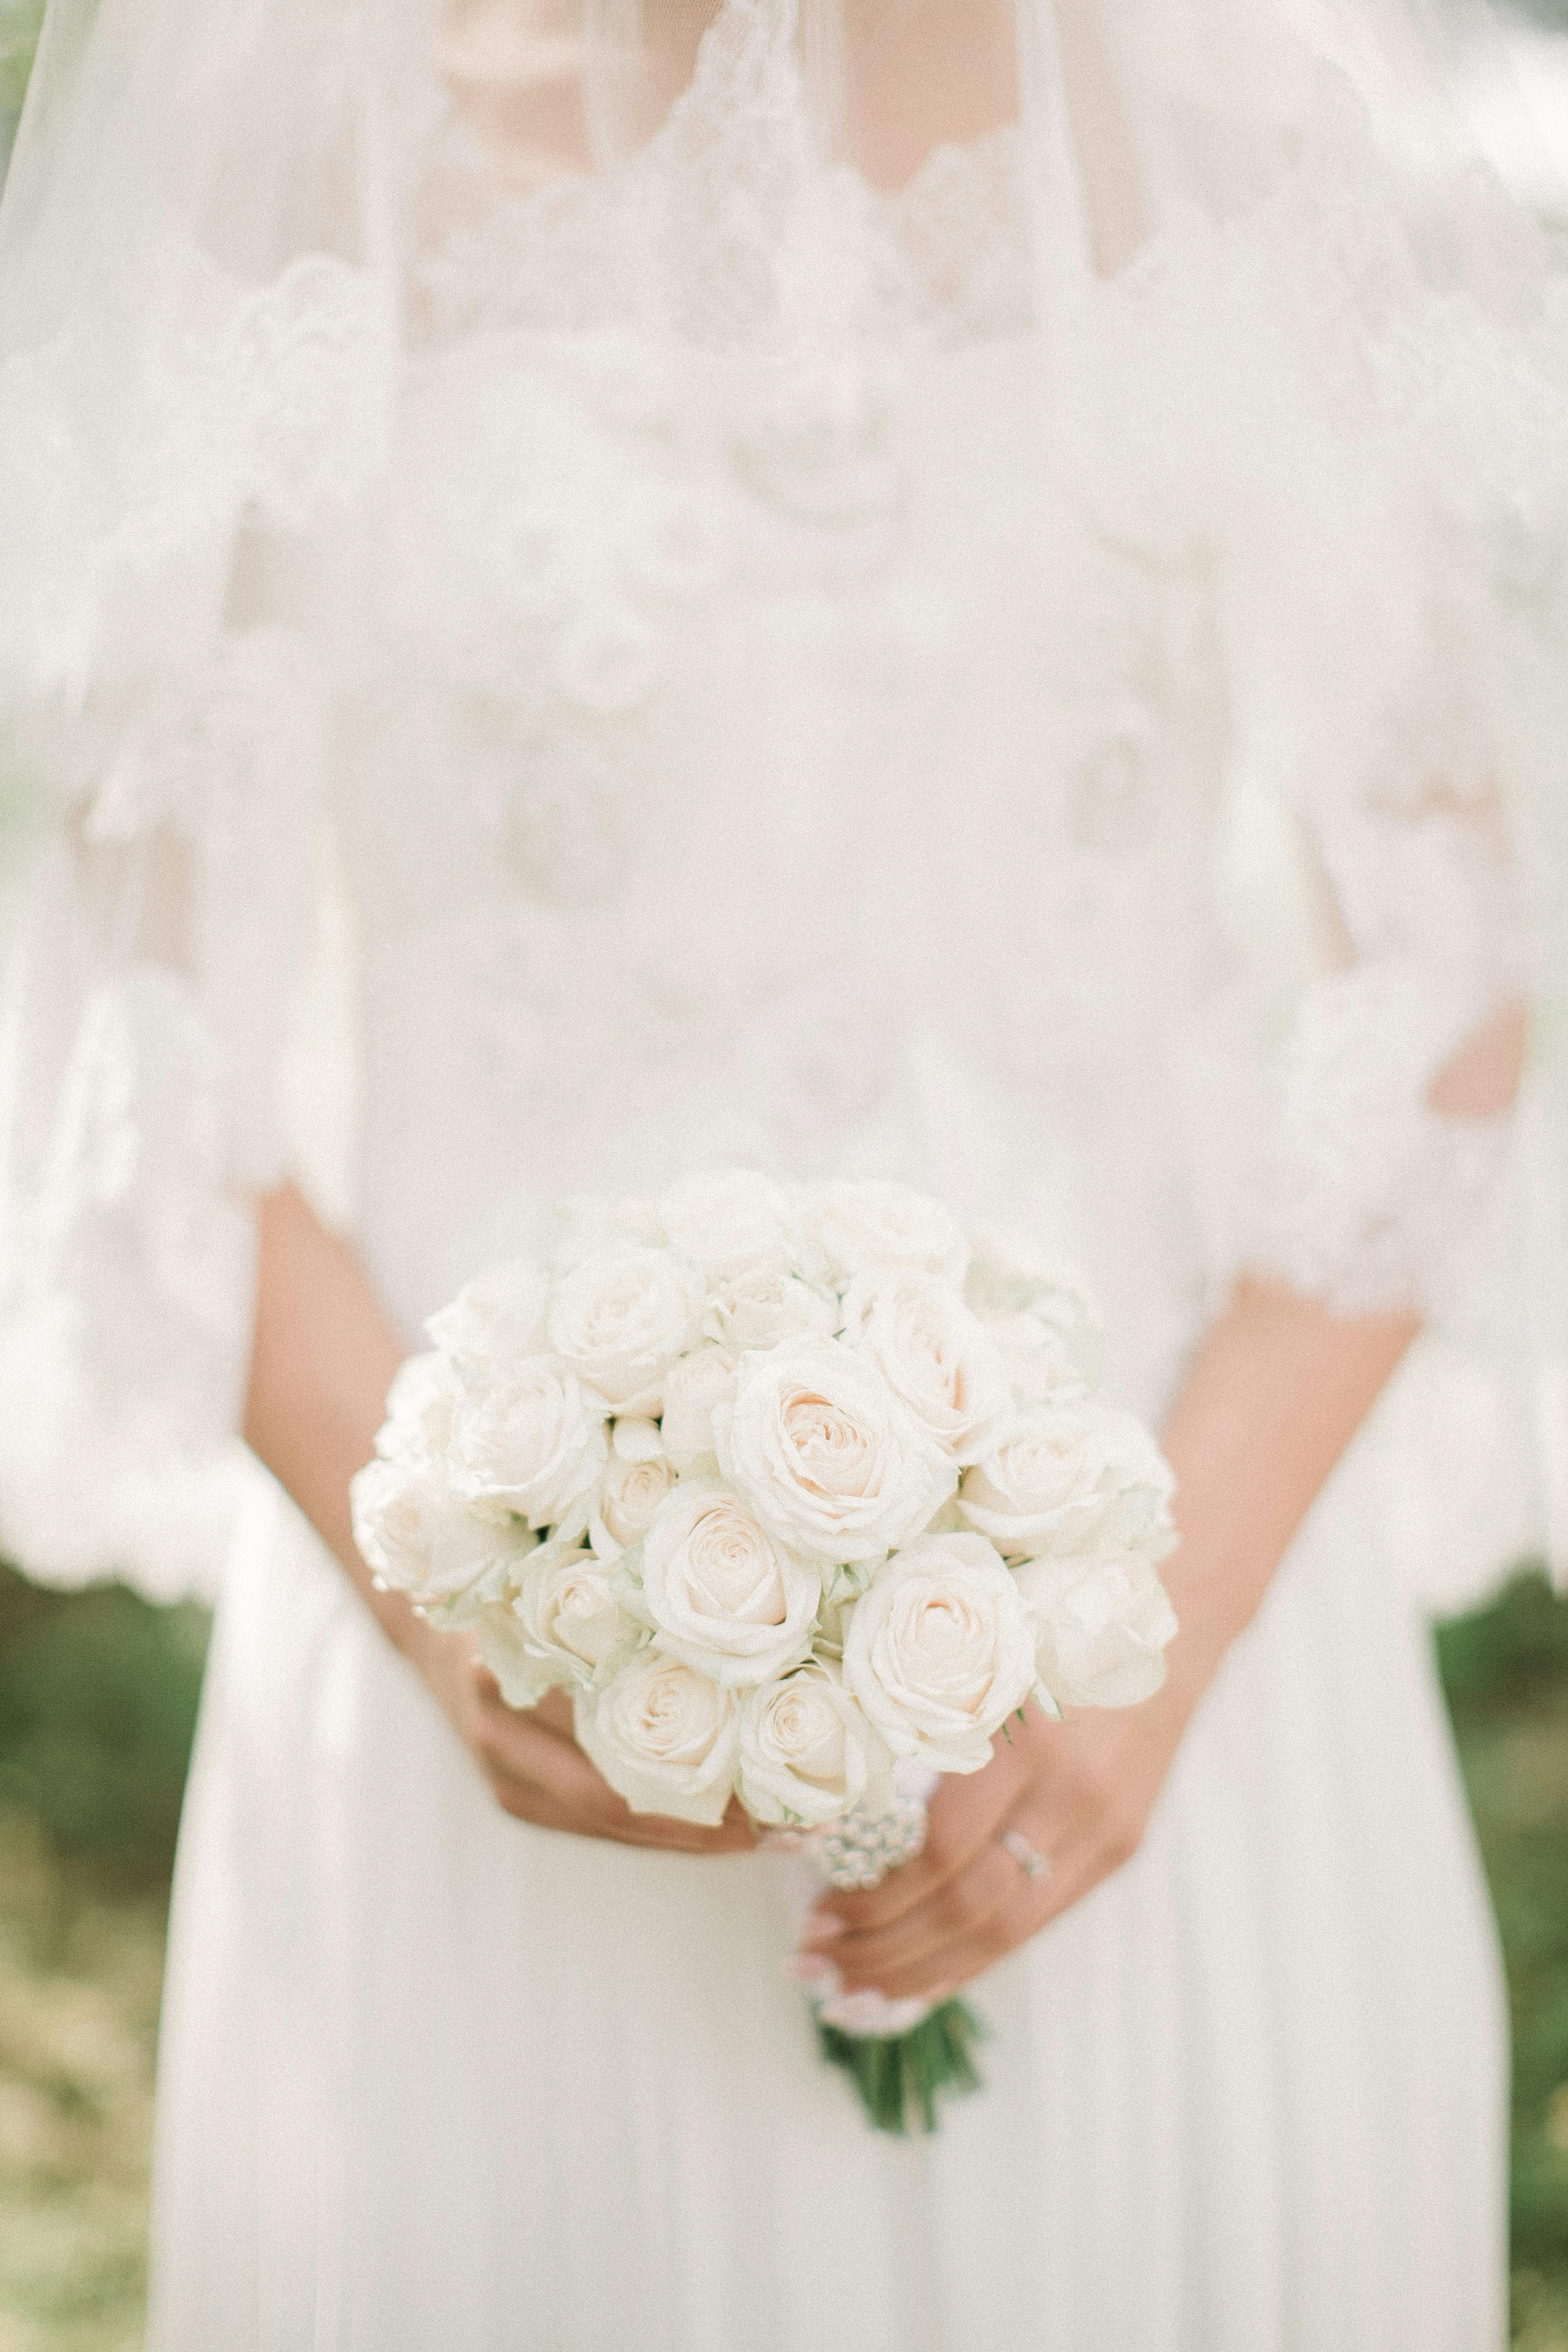 Una novia sosteniendo flores blancas | Fuente: Pexels